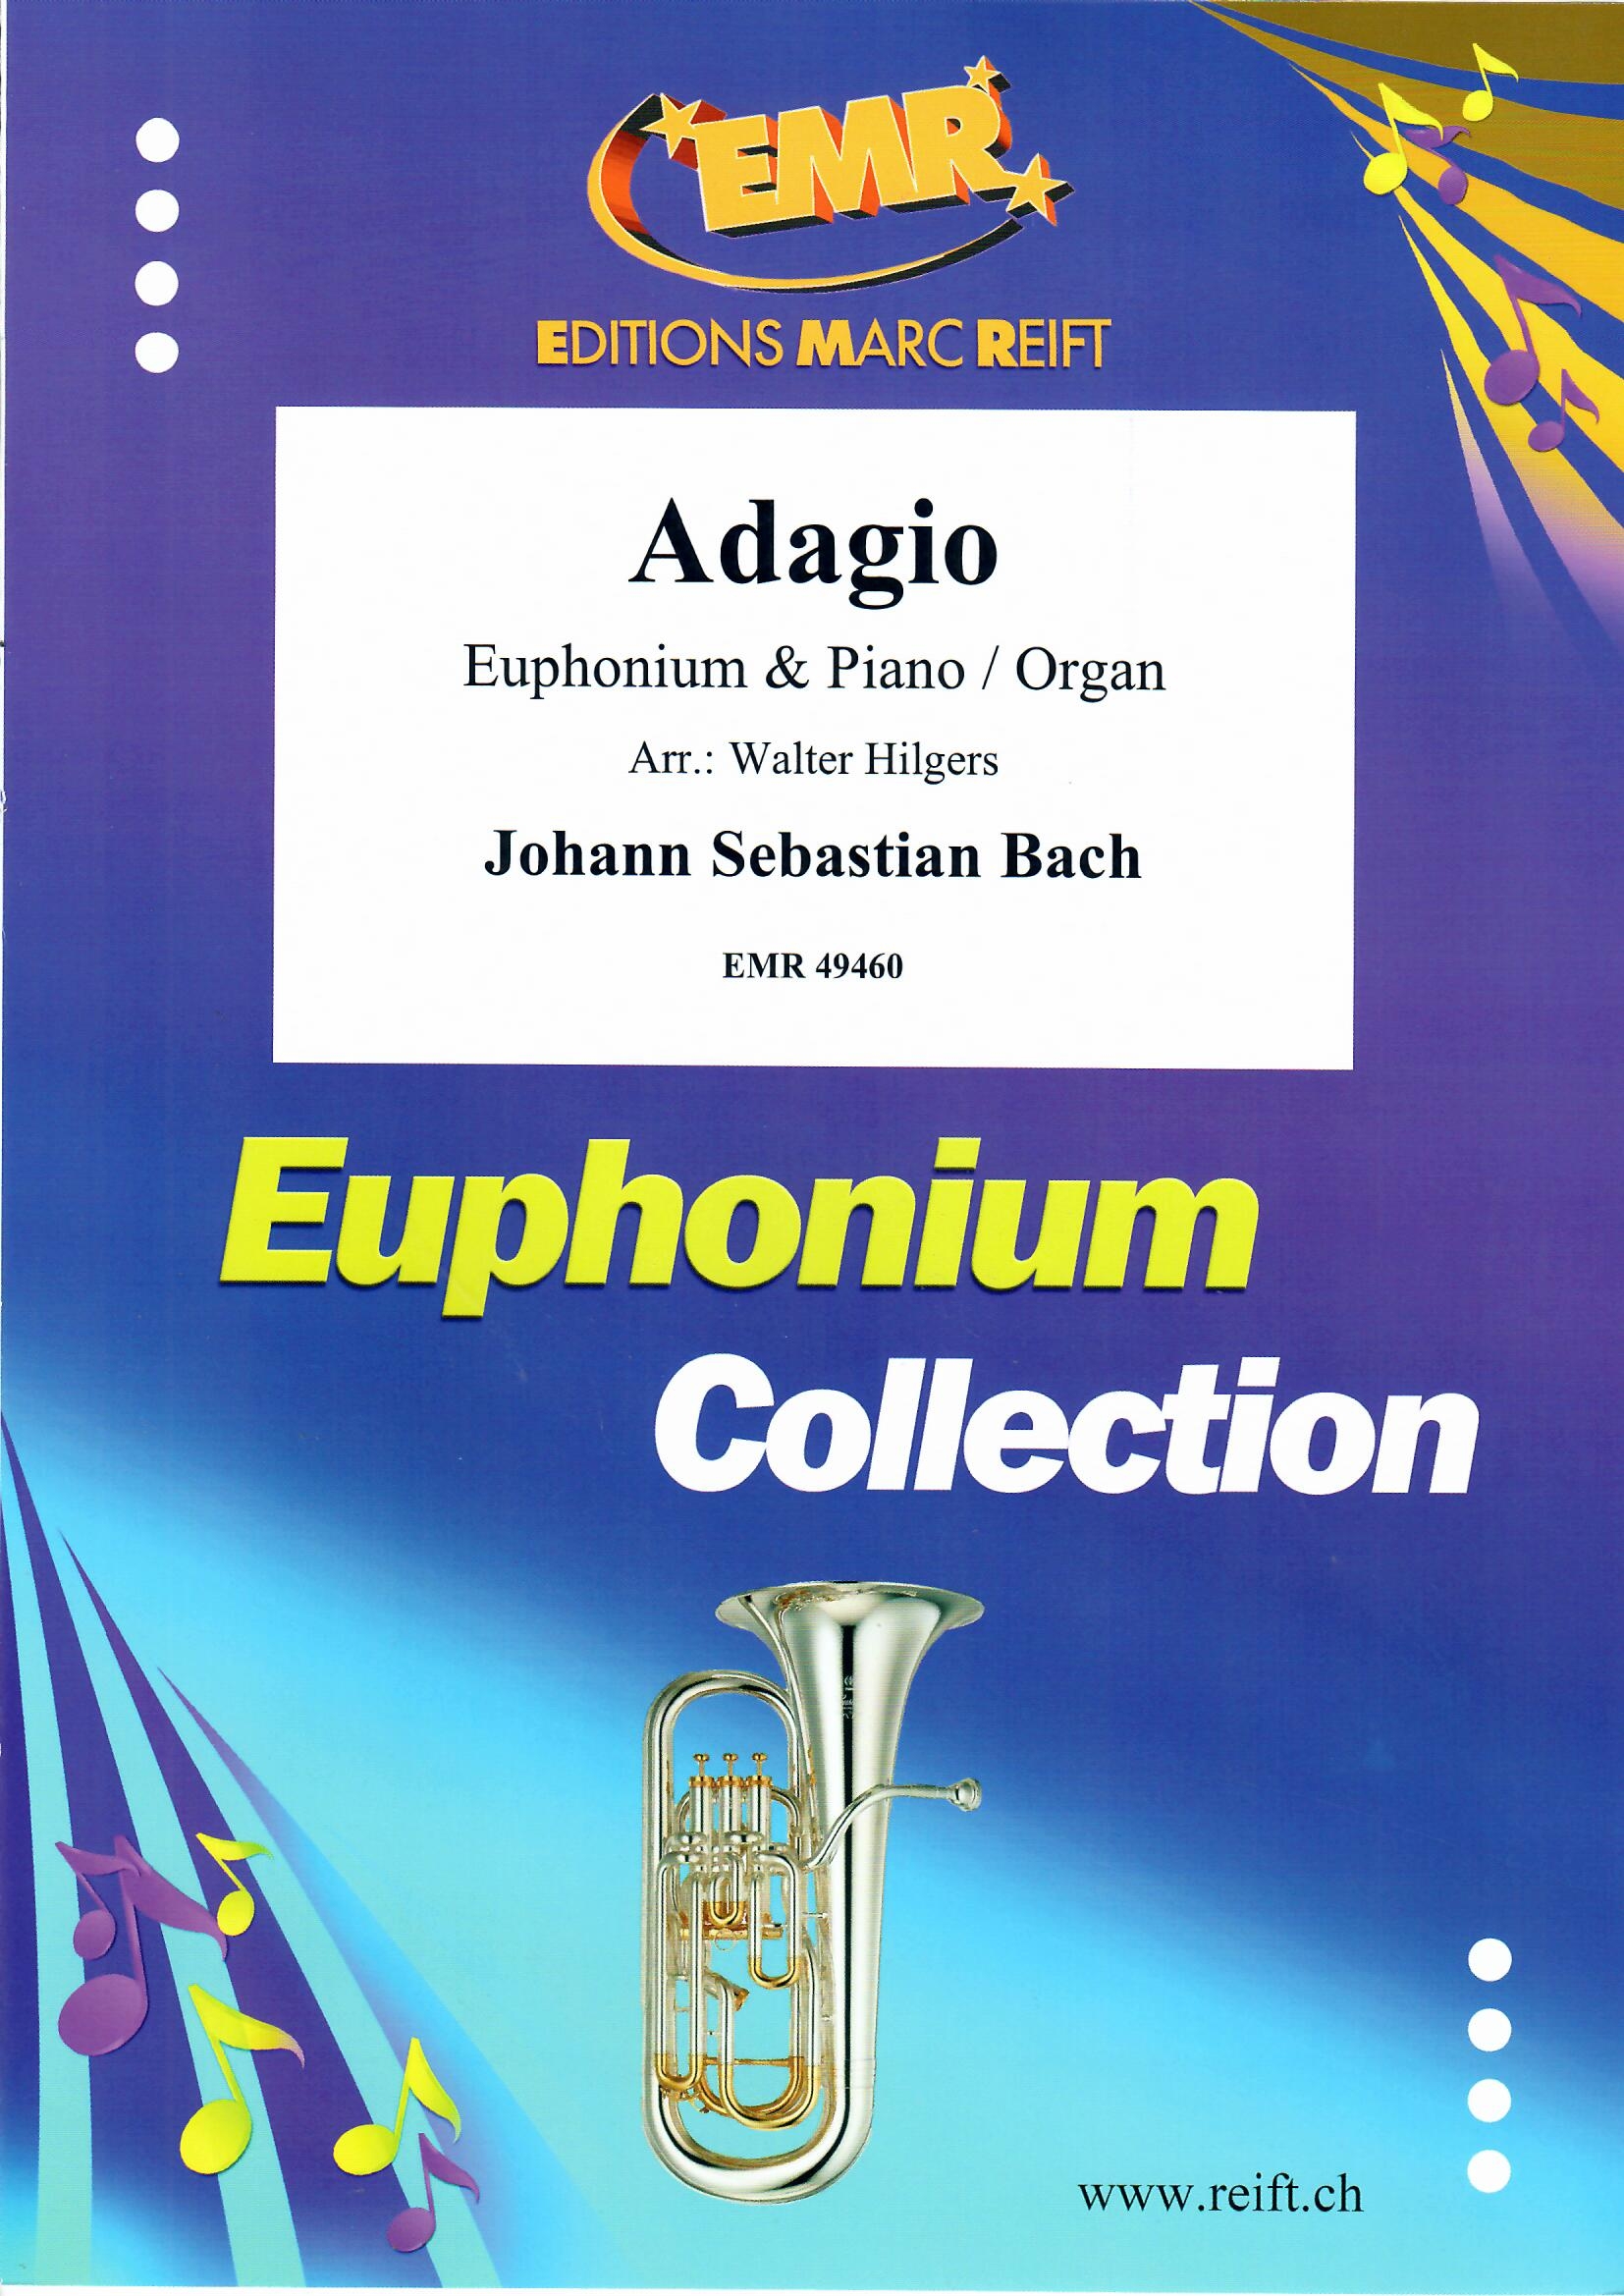 ADAGIO - Euphonium & Organ, SOLOS - Euphonium